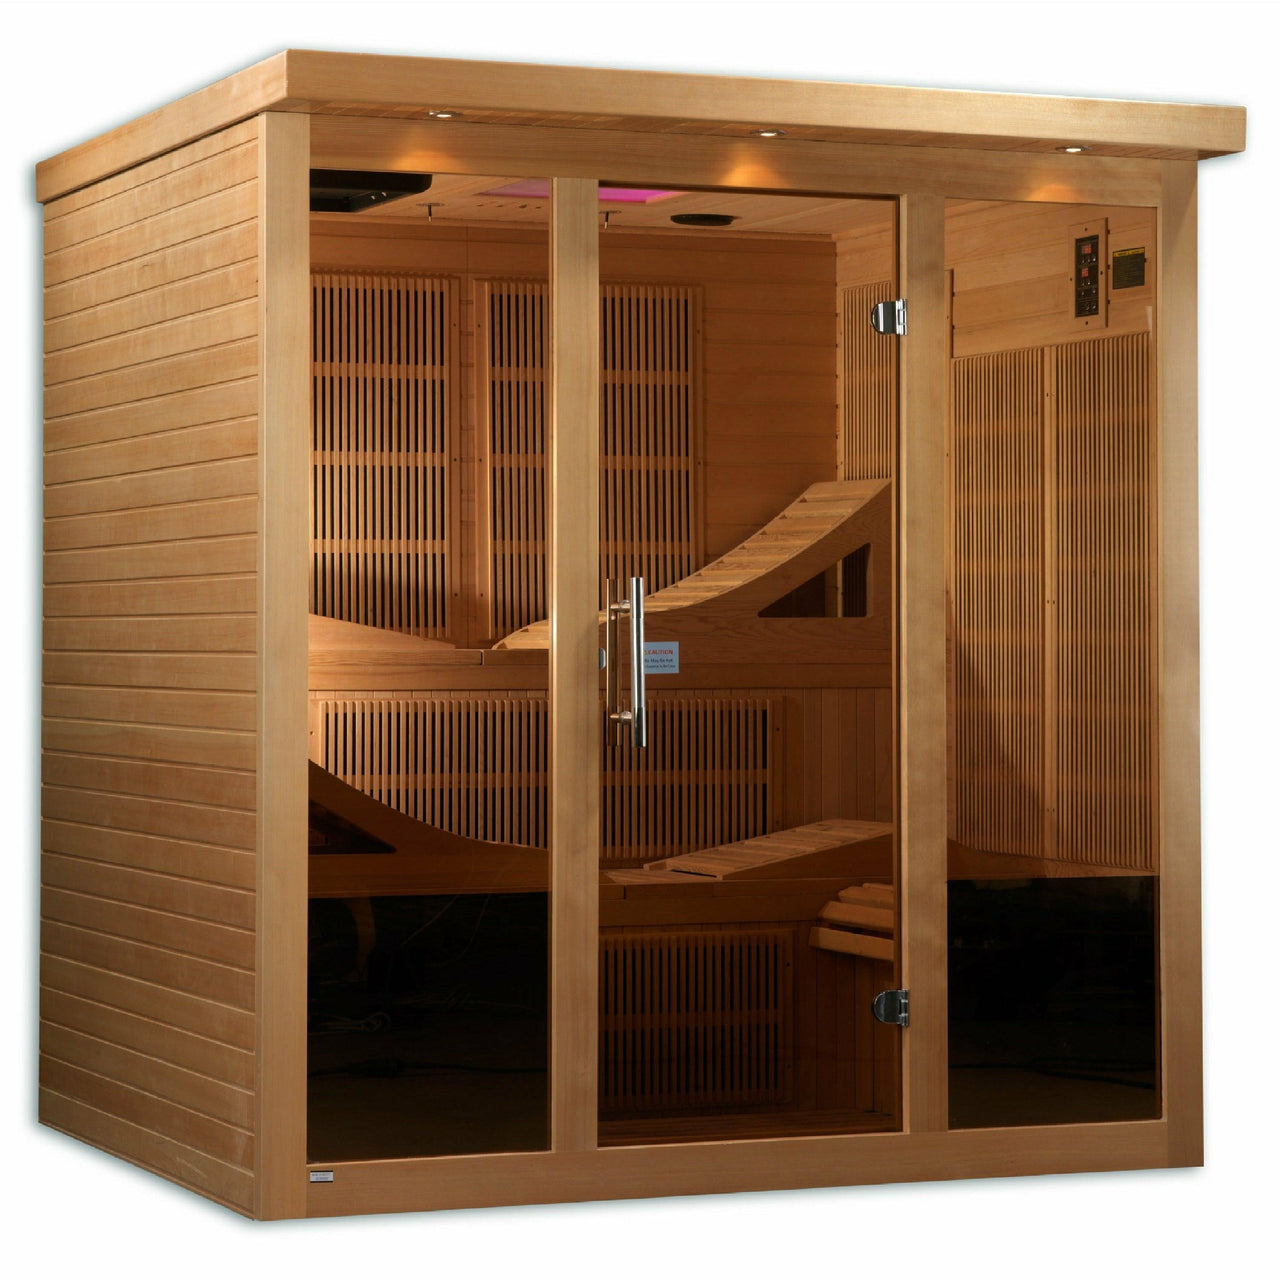 Golden Designs Sauna: "Monaco Elite" 6 Person PureTech™ Near Zero Far Infrared Sauna - GDI-6996-01 - Fire Pit Stock